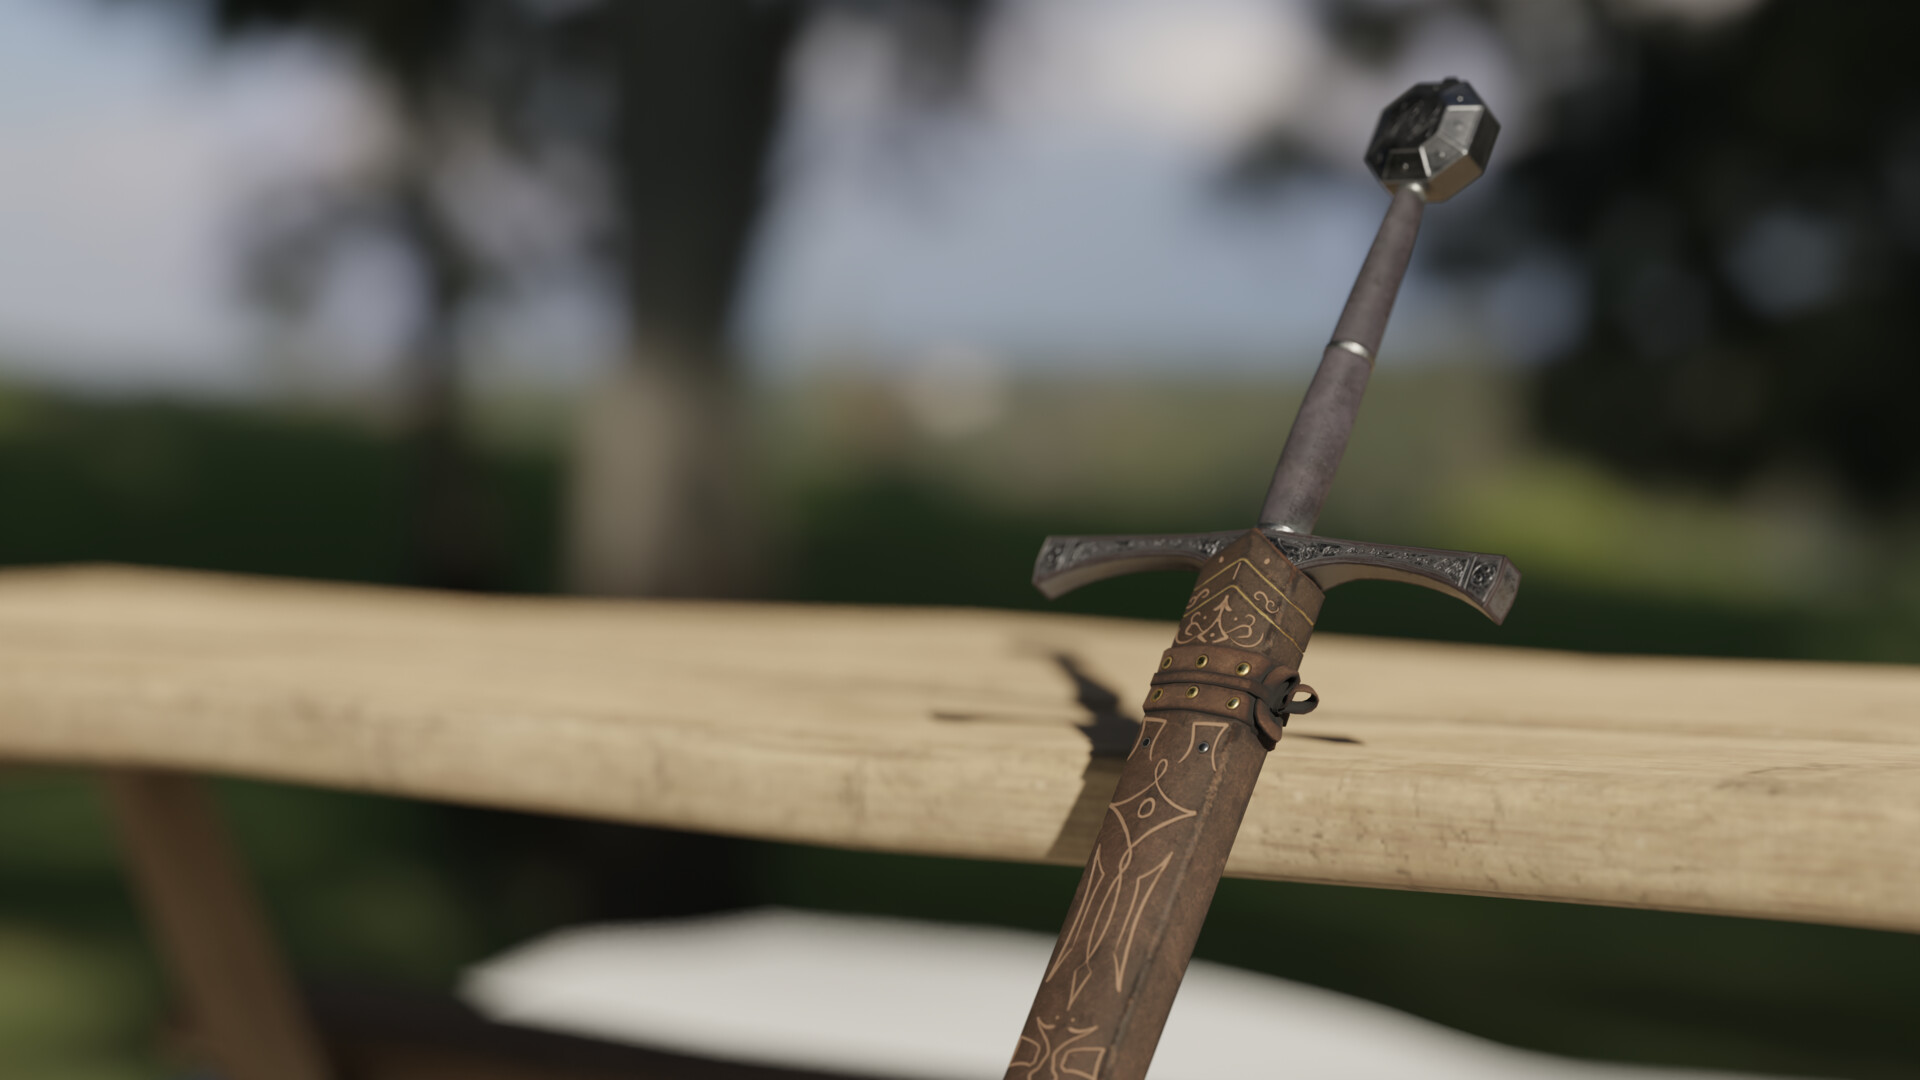 ArtStation - Vector Design Of Interlocked Medieval Swords